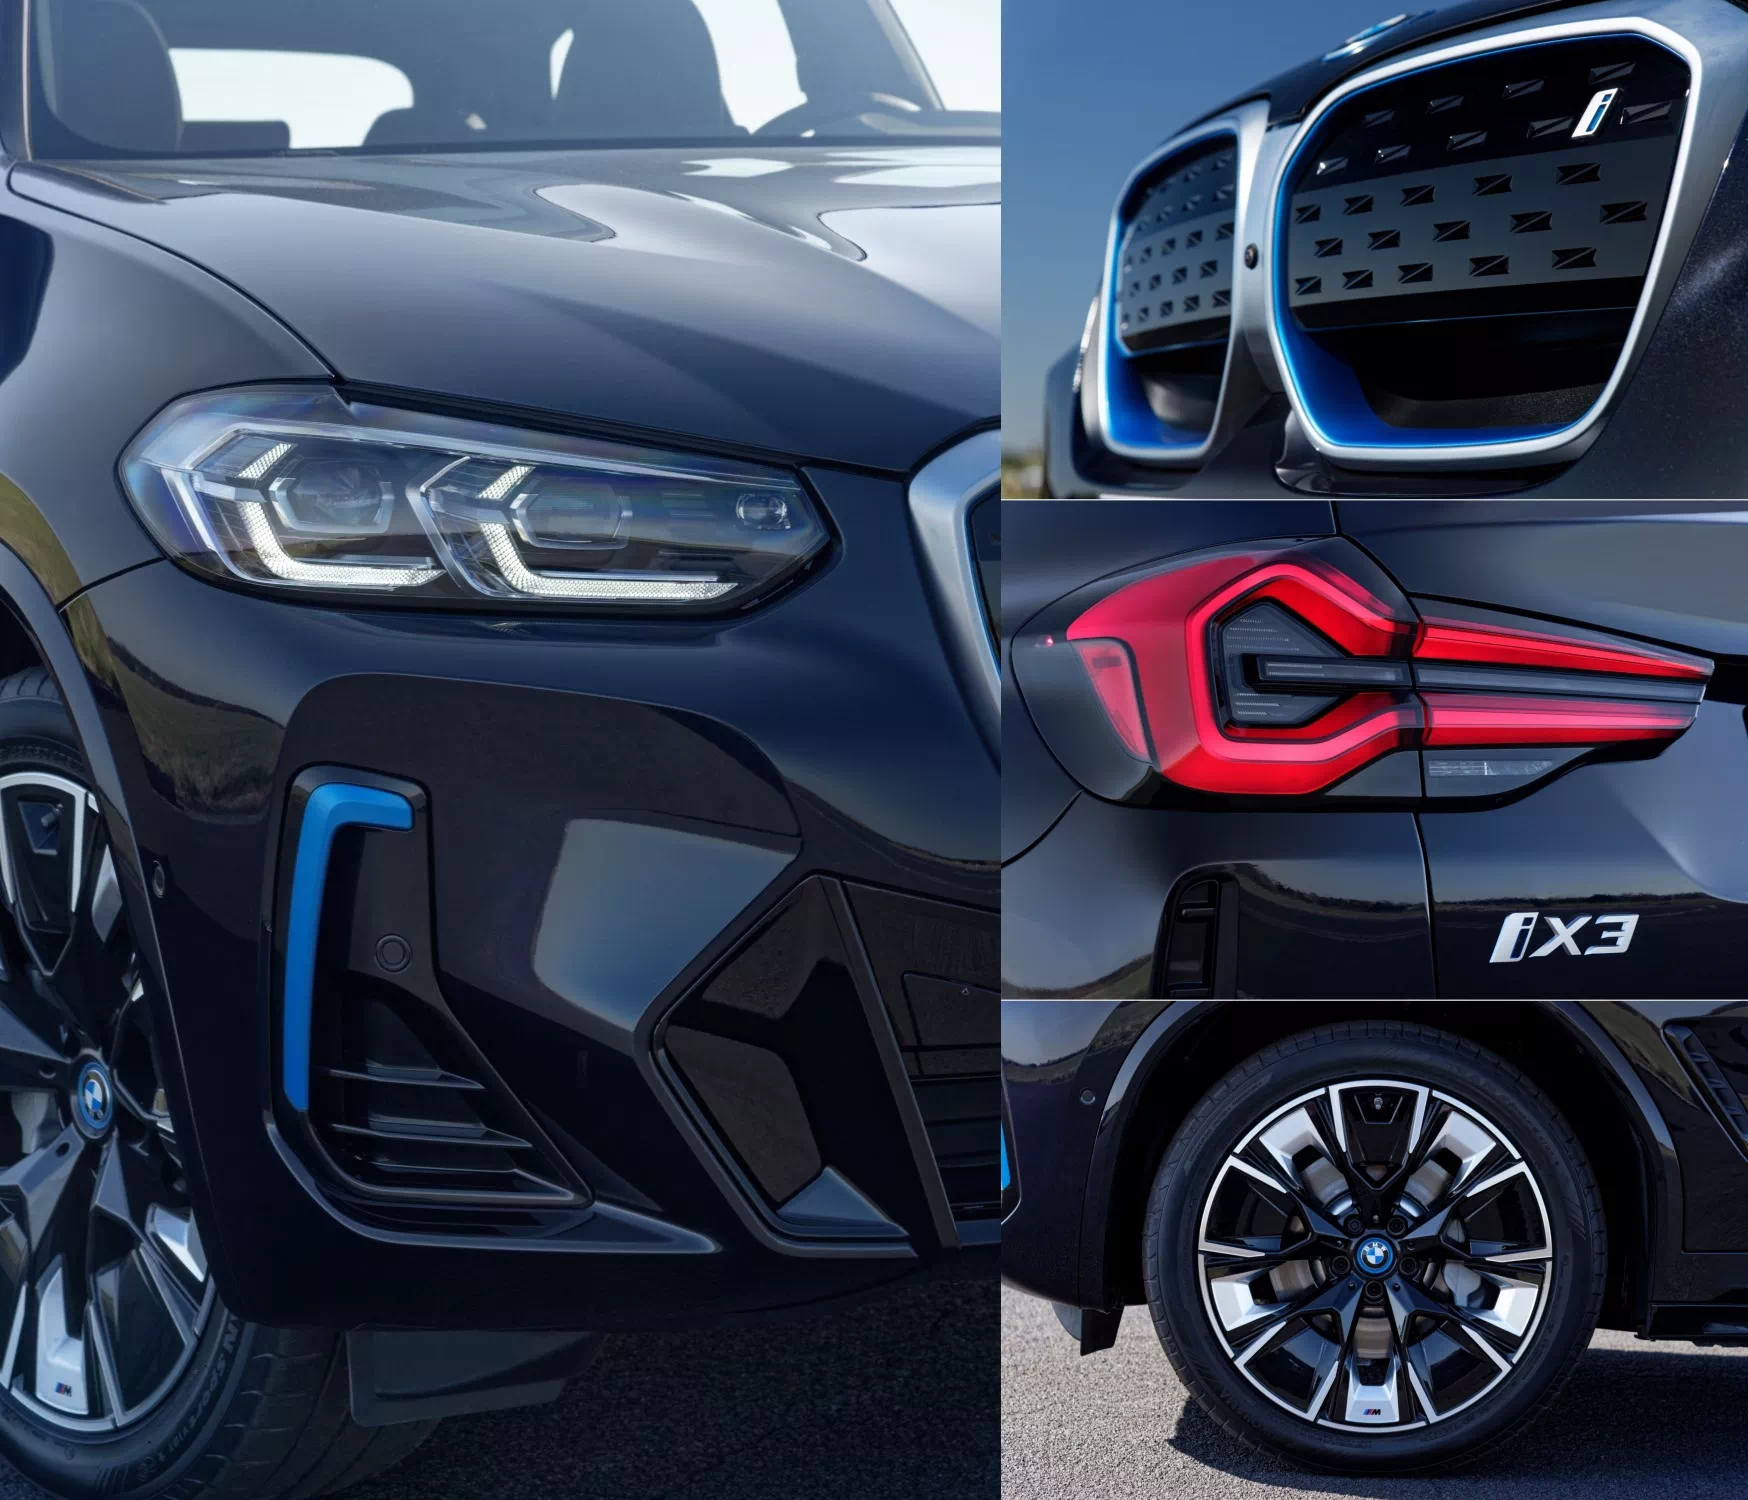 더 뉴 BMW iX3 외장 디자인 주요 변경점을 한 이미지에 모았습니다.